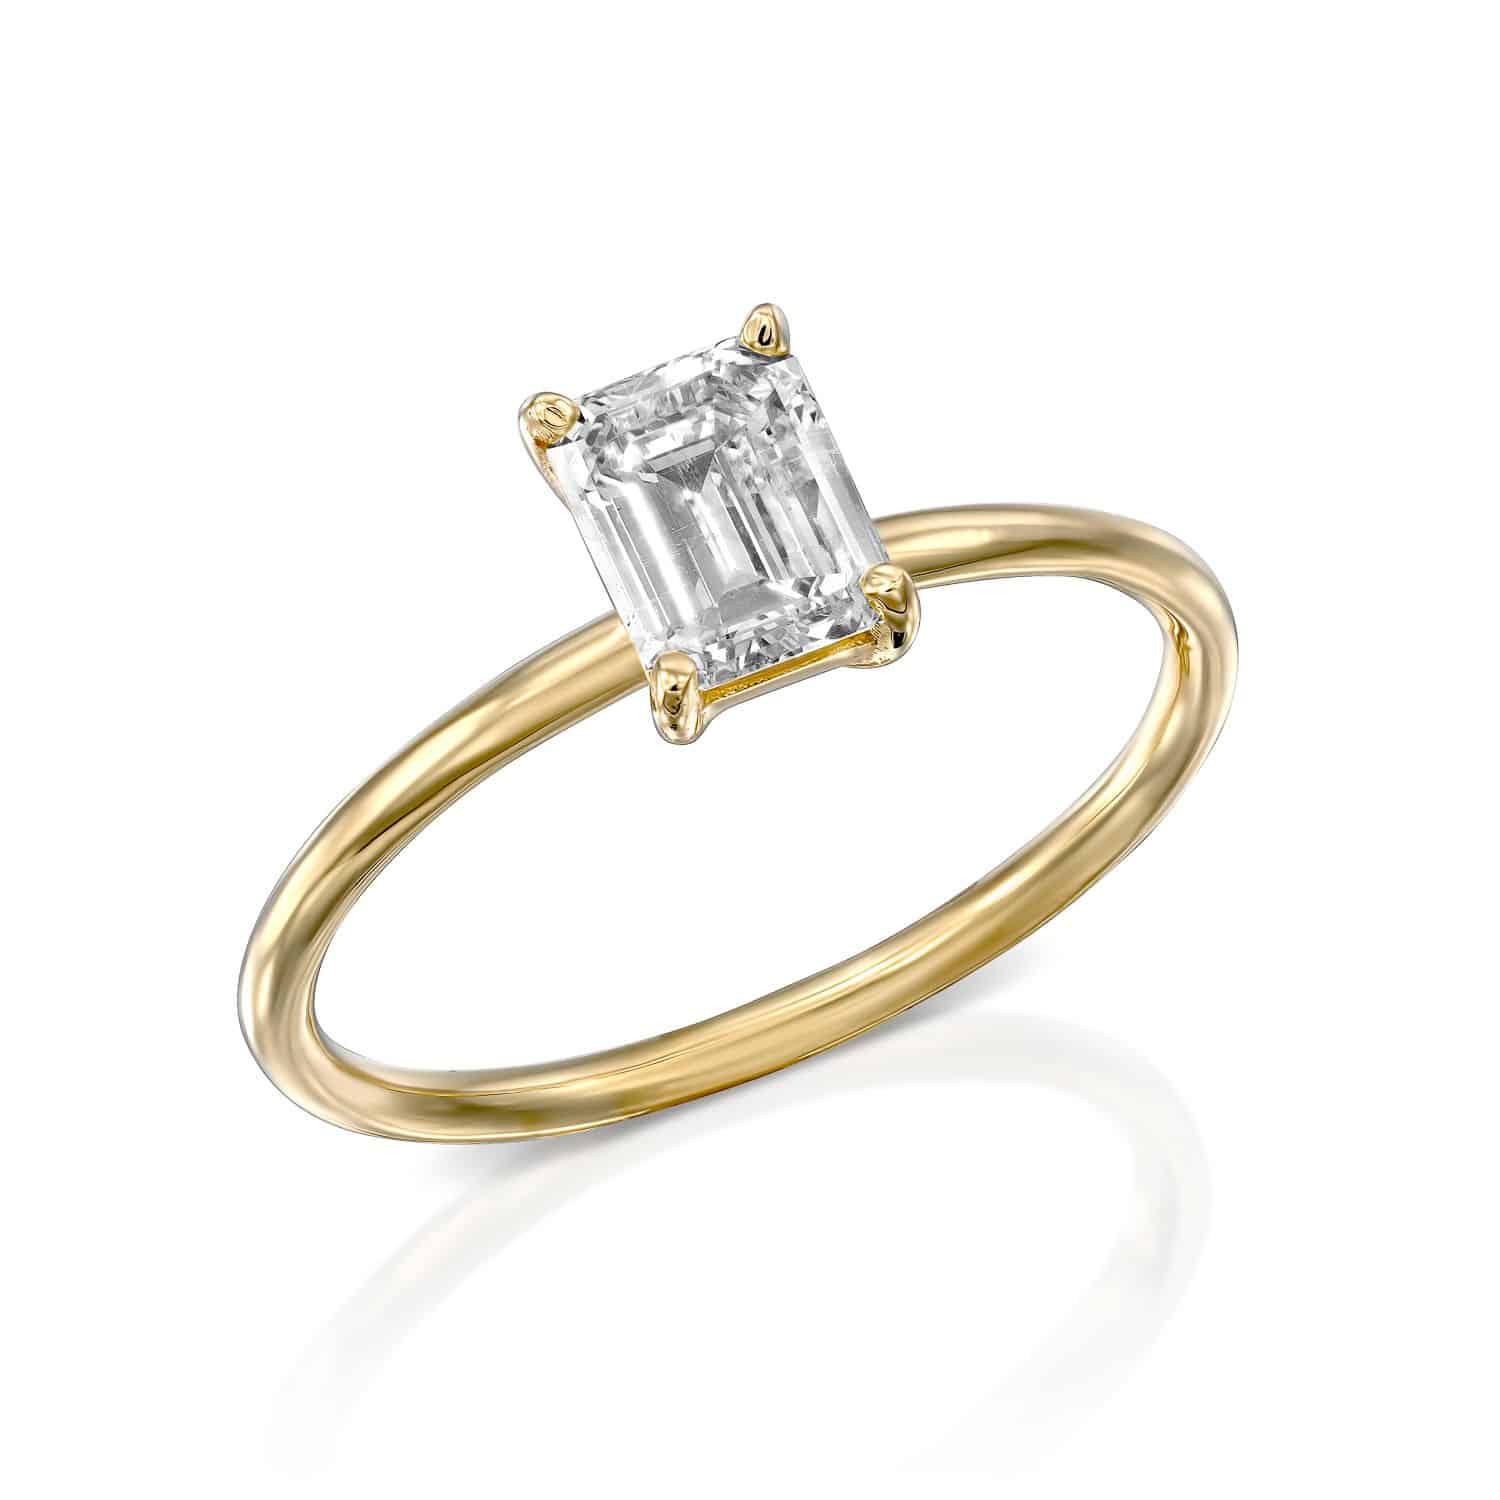 טבעת זהב אלגנטית הכוללת יהלום יחיד בחיתוך אמרלד, מבודדת על רקע לבן.